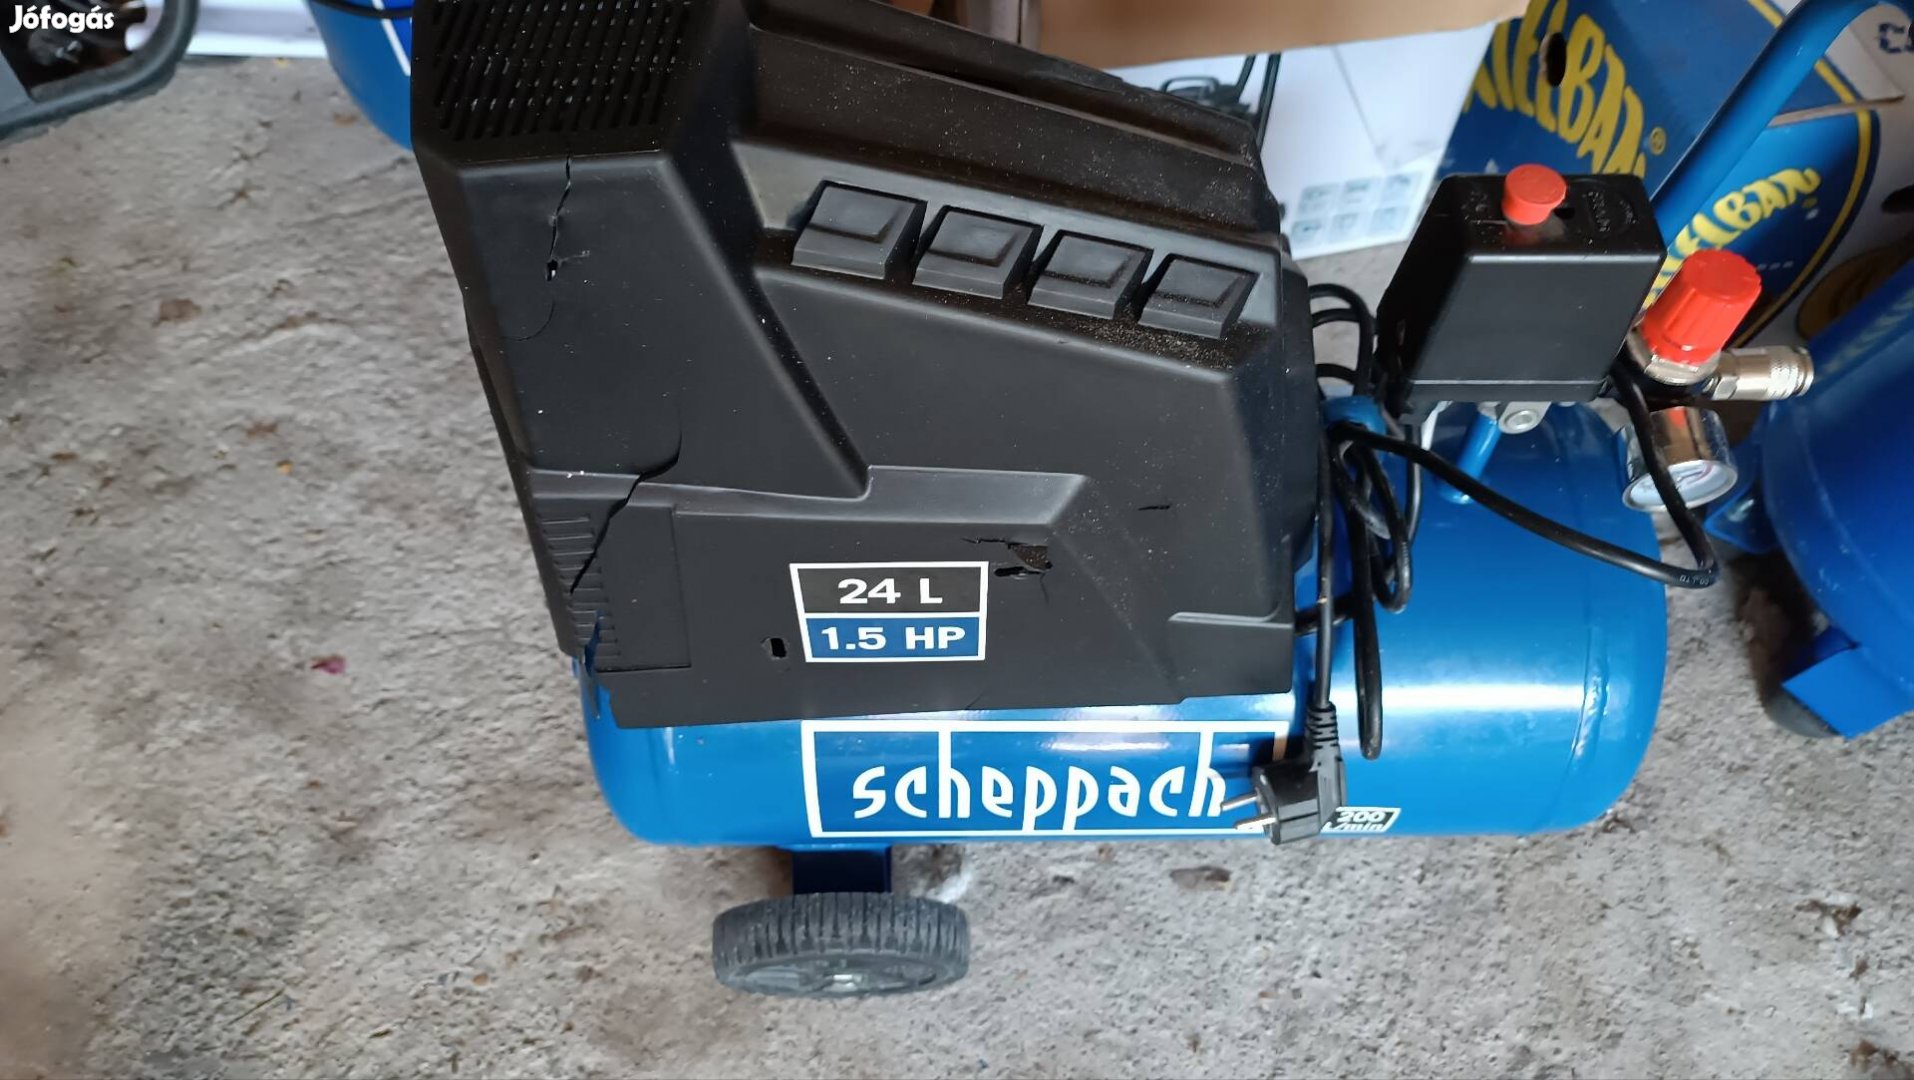 Scheppach 24 literes kompresszor újszerű állapotban 